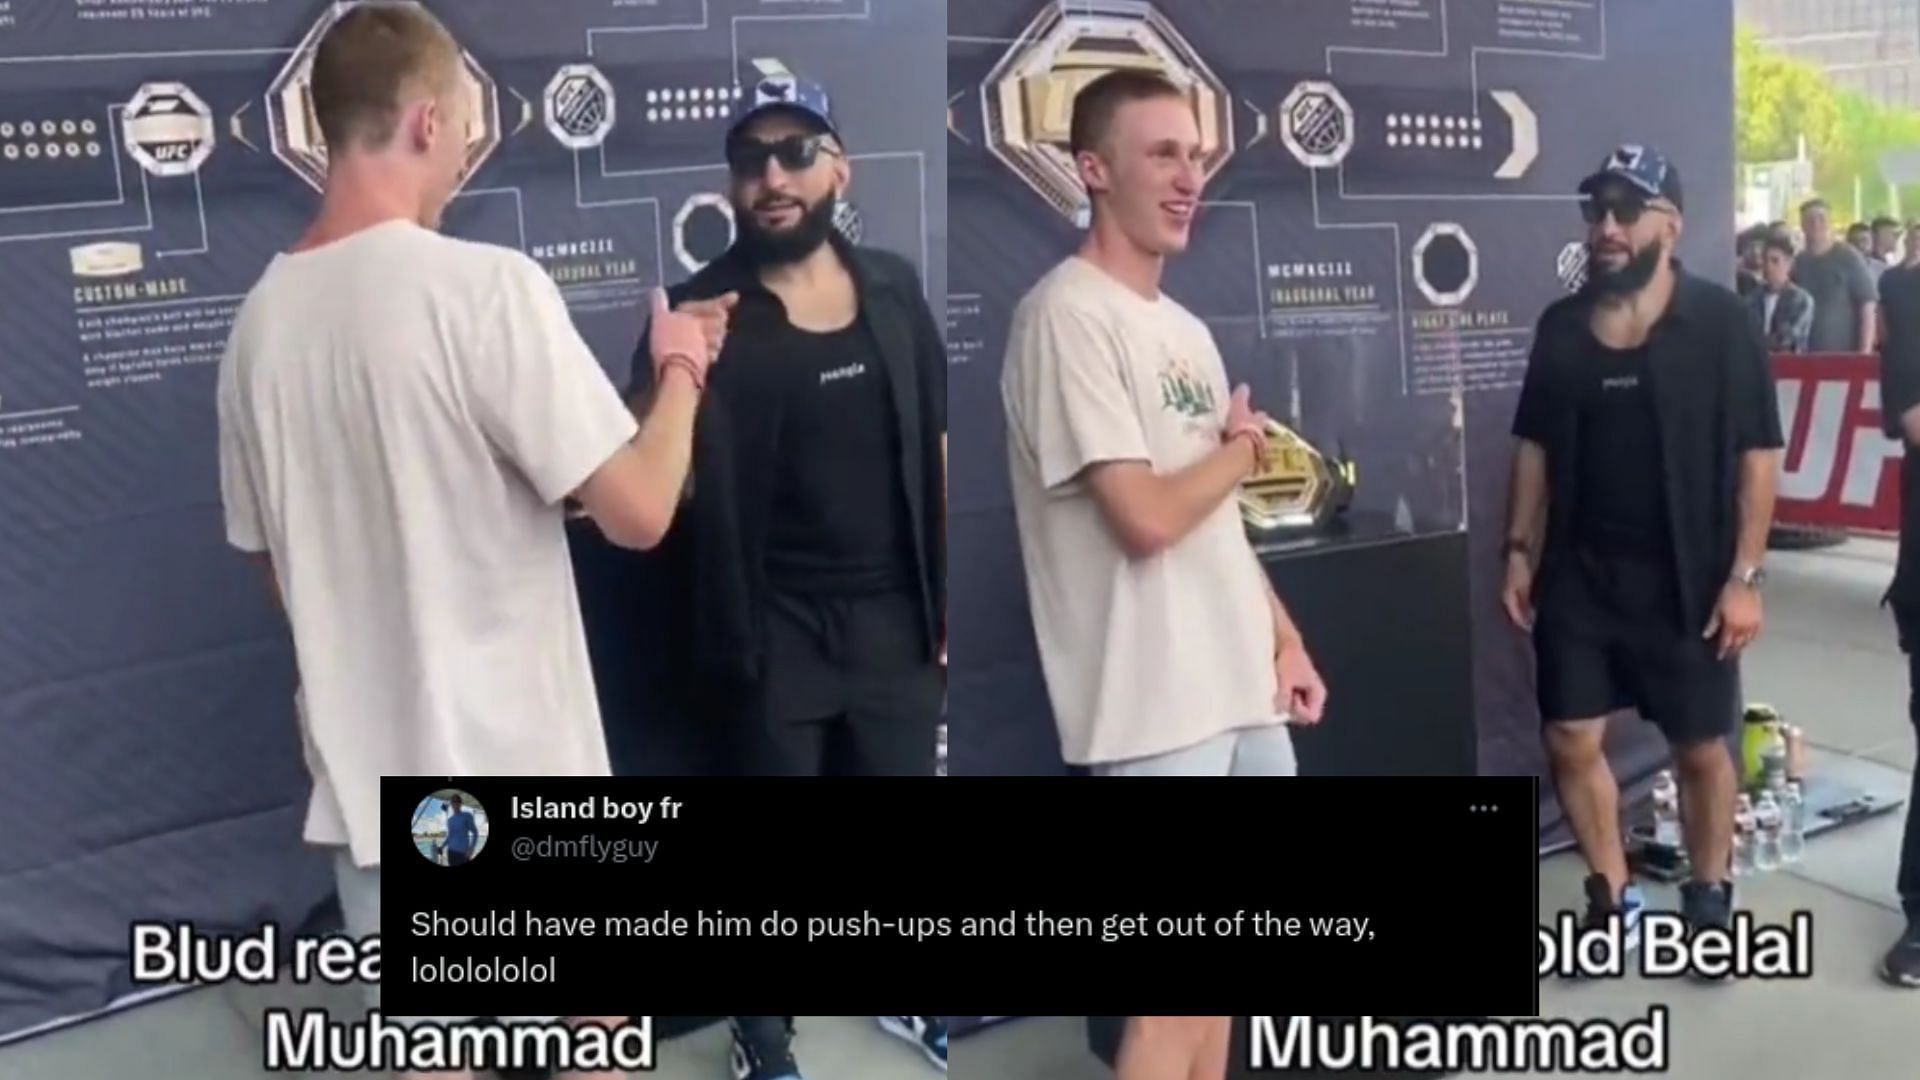 Belal Muhammad [Image courtesy of @DovySimuMMA on Twitter]